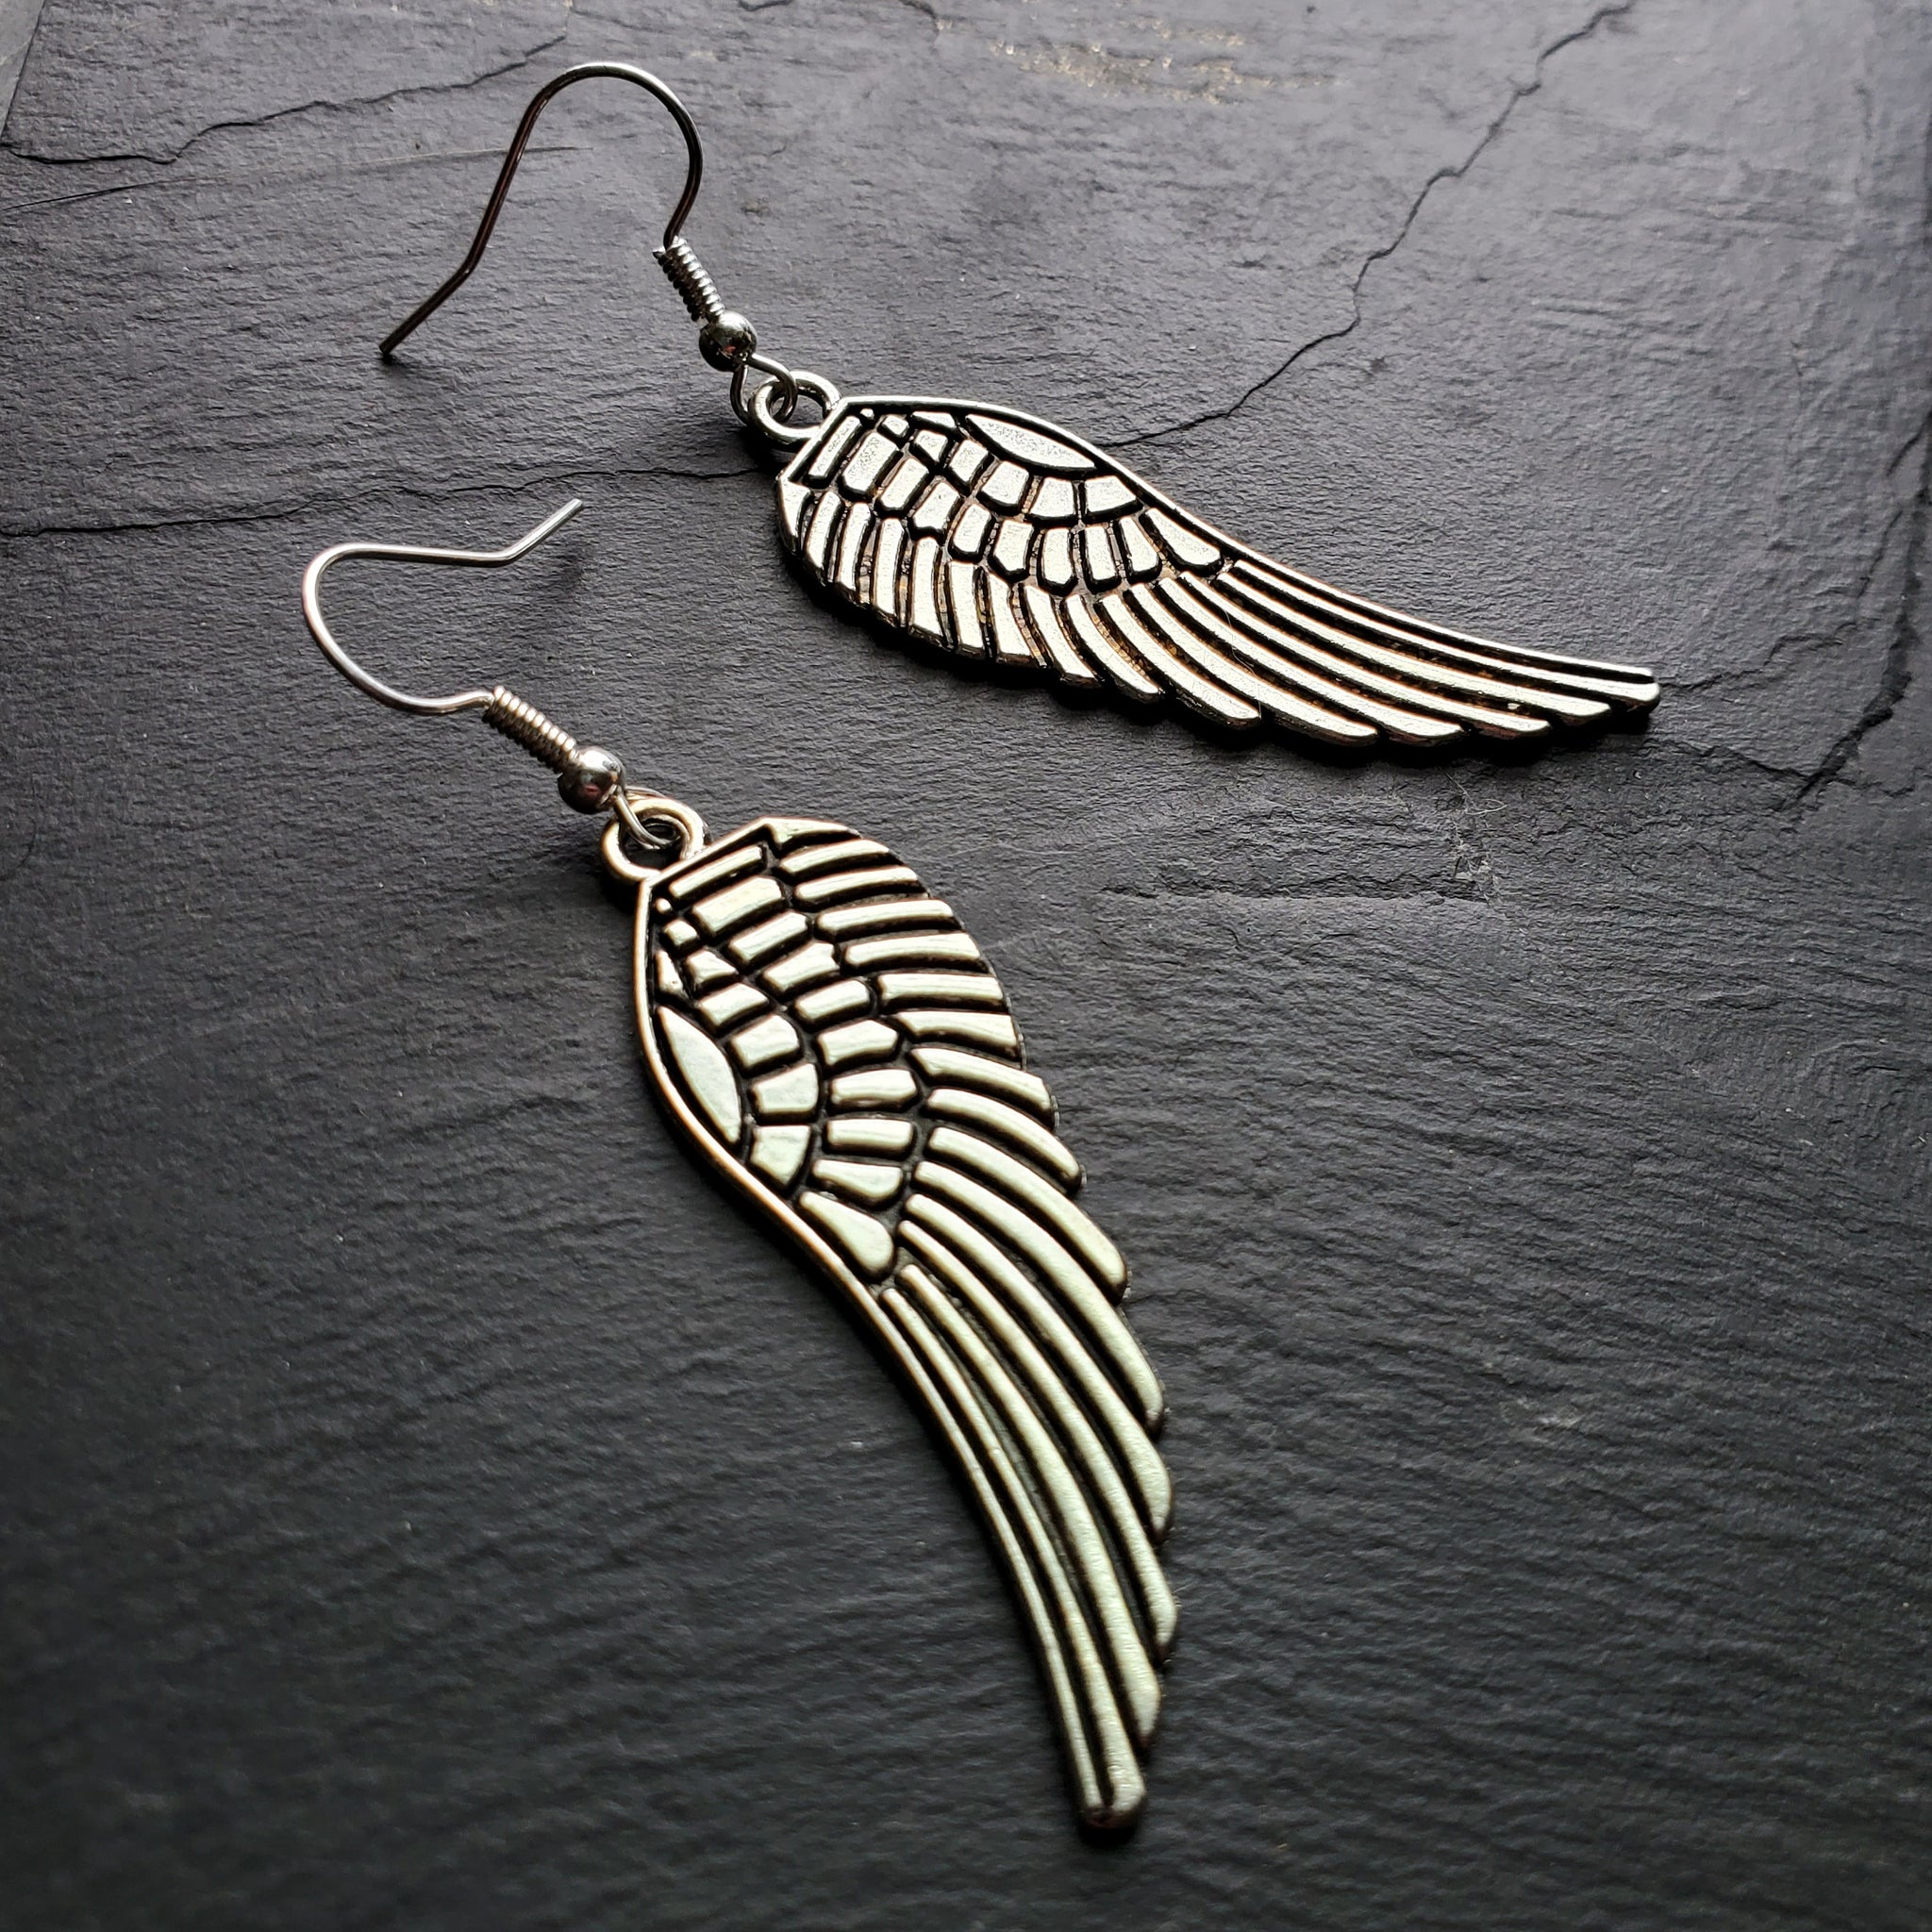 On Fairy Wings Earrings Fairy tale jewelry